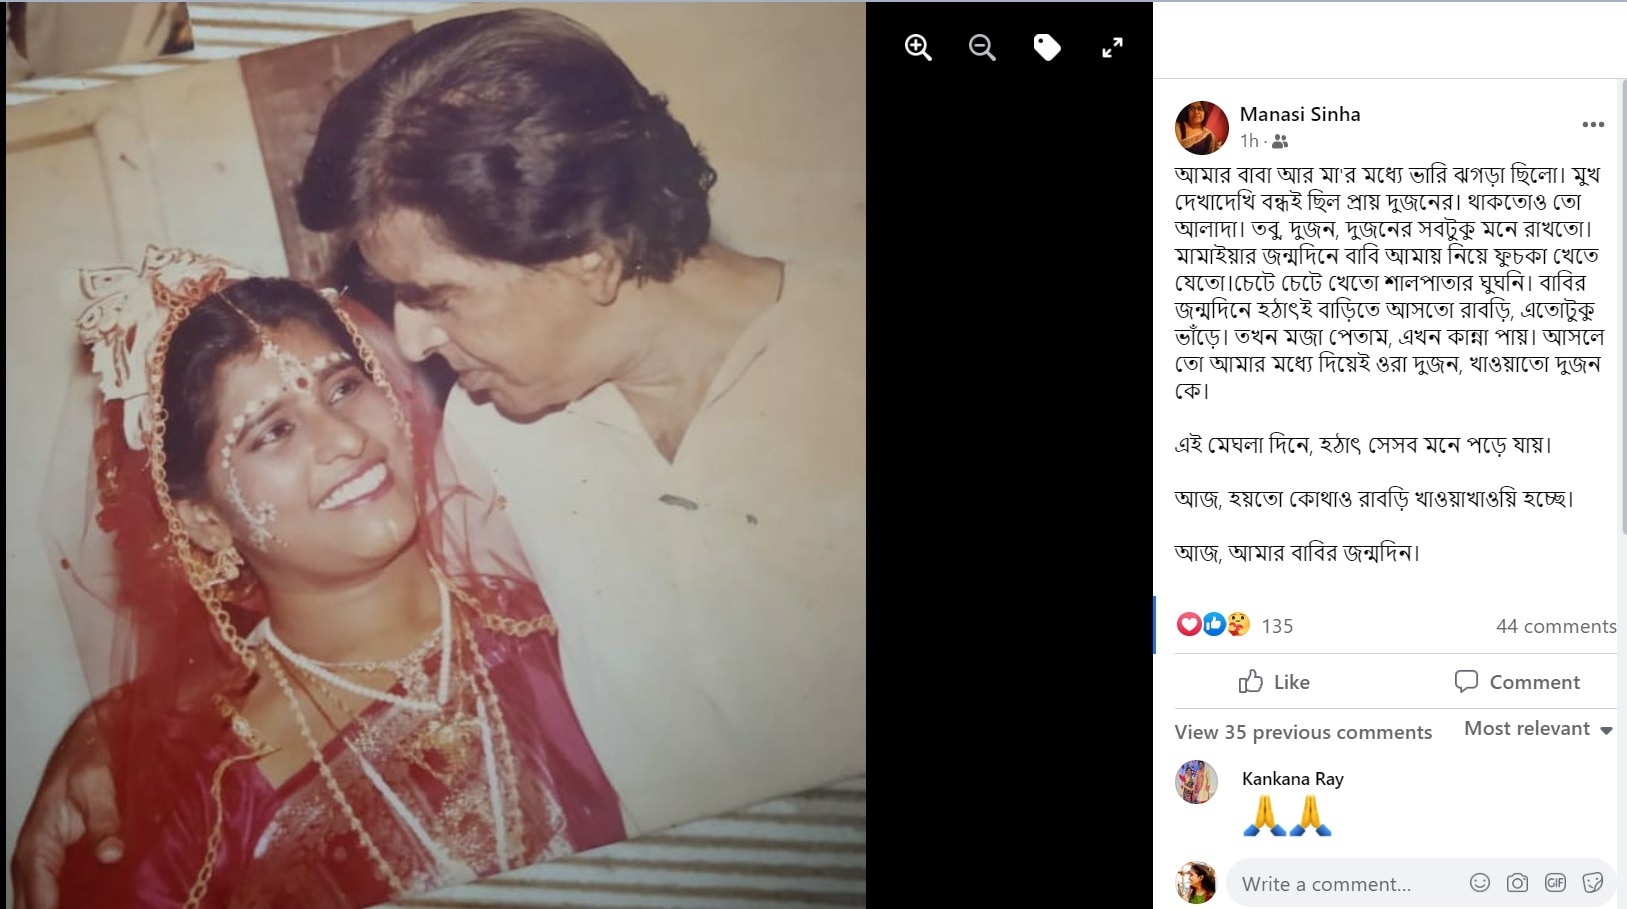 Manasi Sinha: 'বাবি'র জন্মদিনে আবেগঘন অভিনেত্রী মানসী সিনহা, পোস্ট করলেন পুরনো ছবি